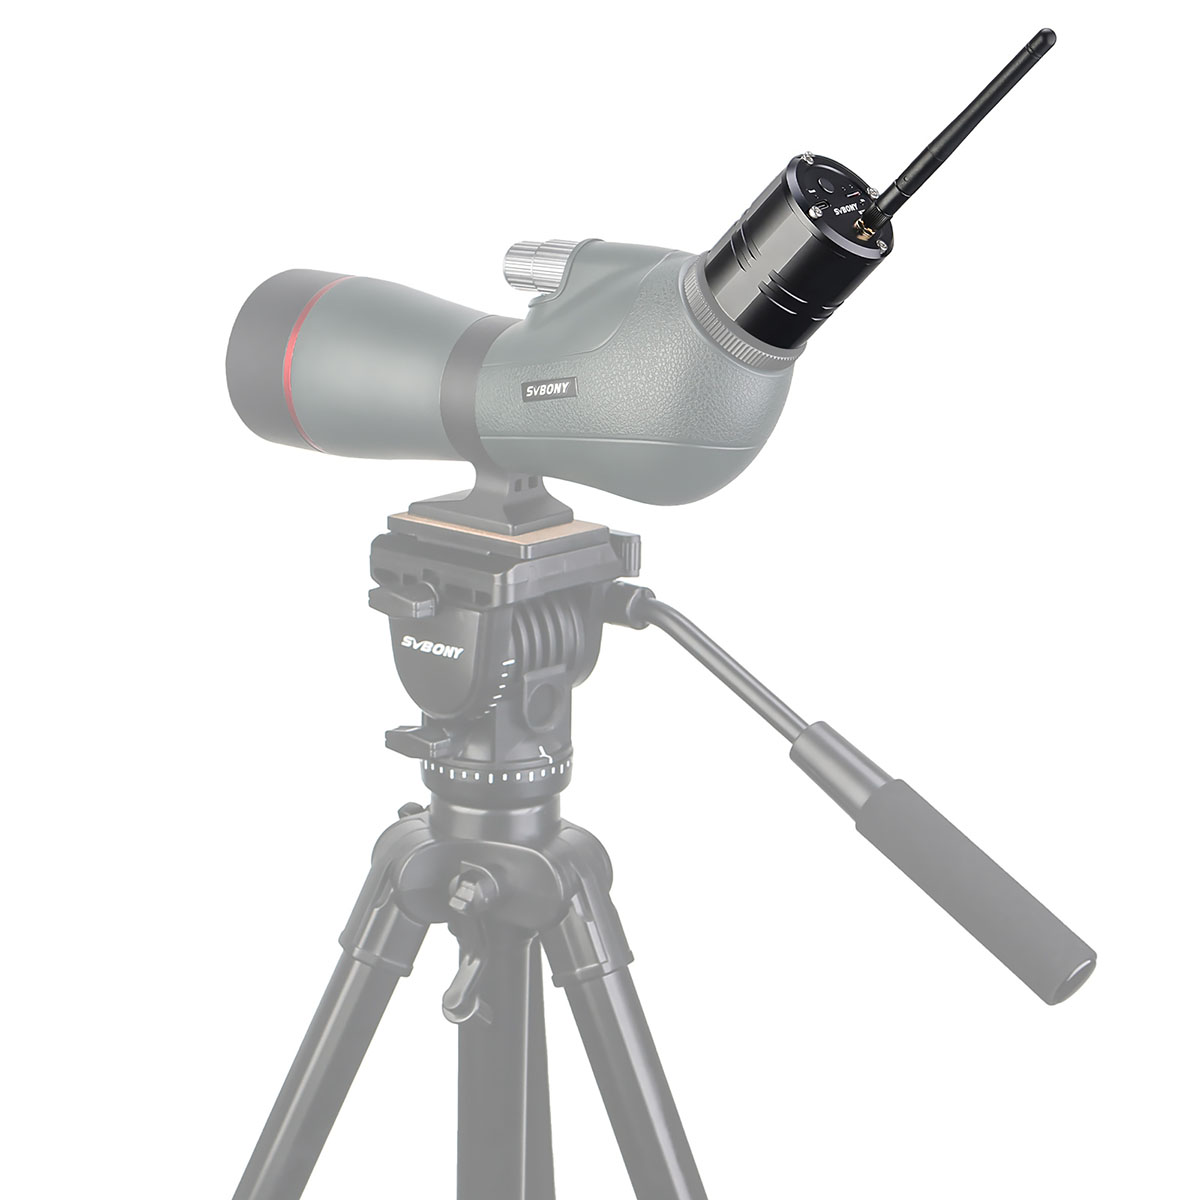 Svbony SC001 wifi spotting scope camera spotting scope connected